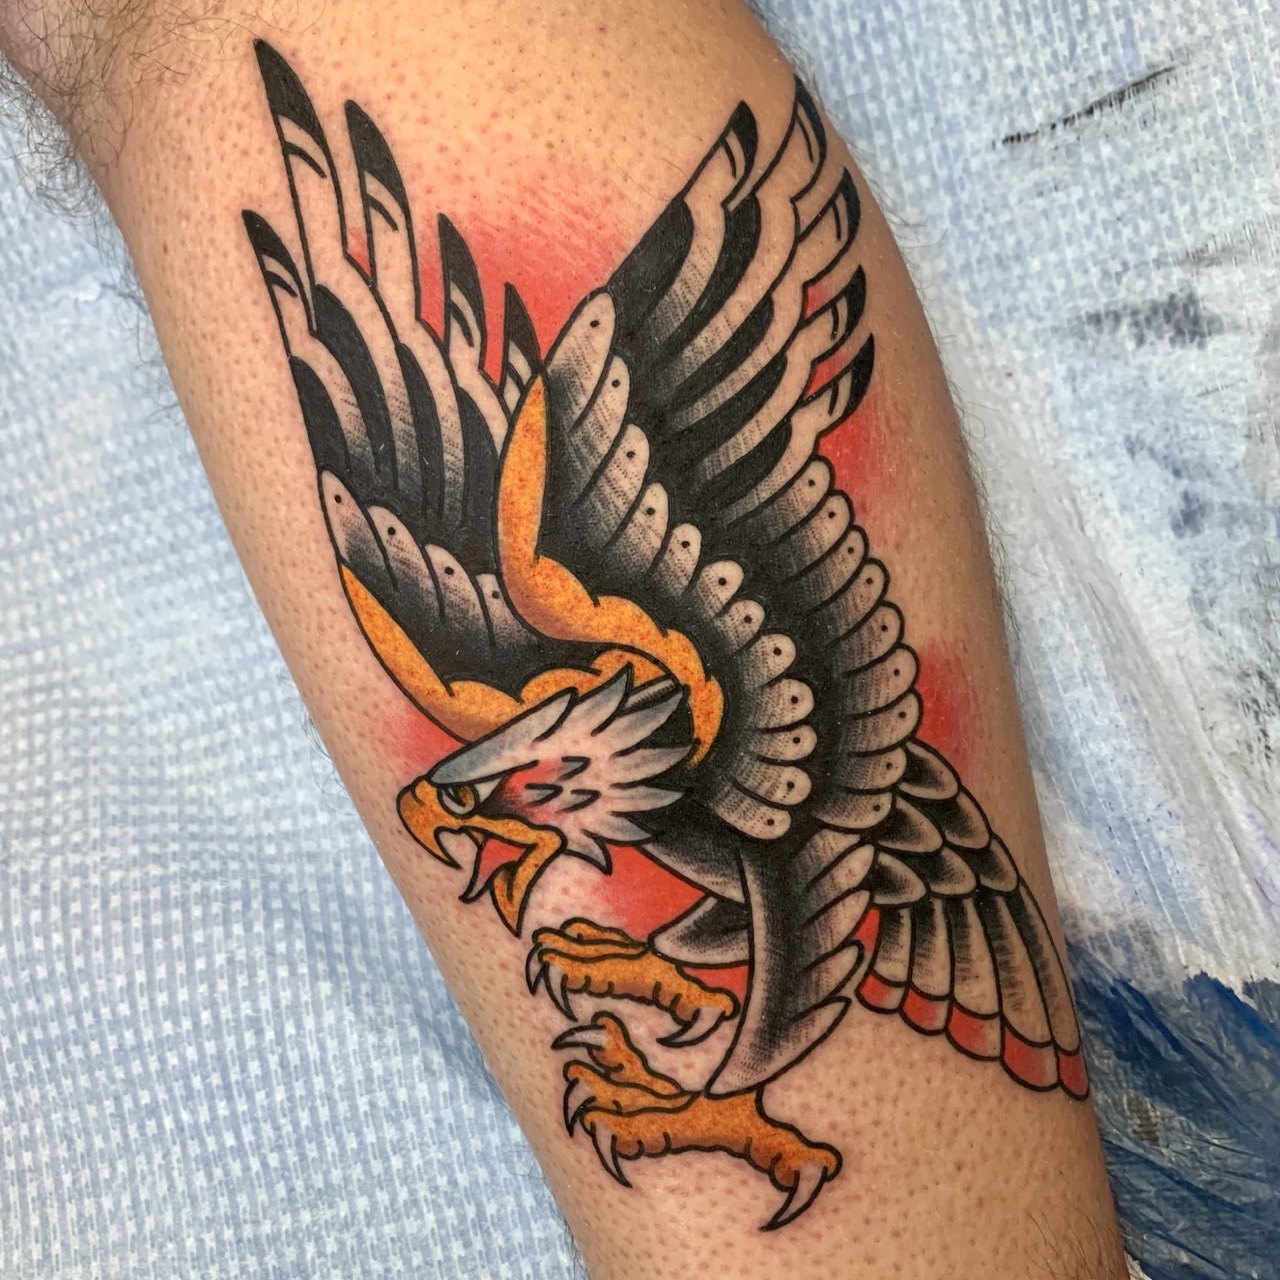 Classic traditional eagle tattoo